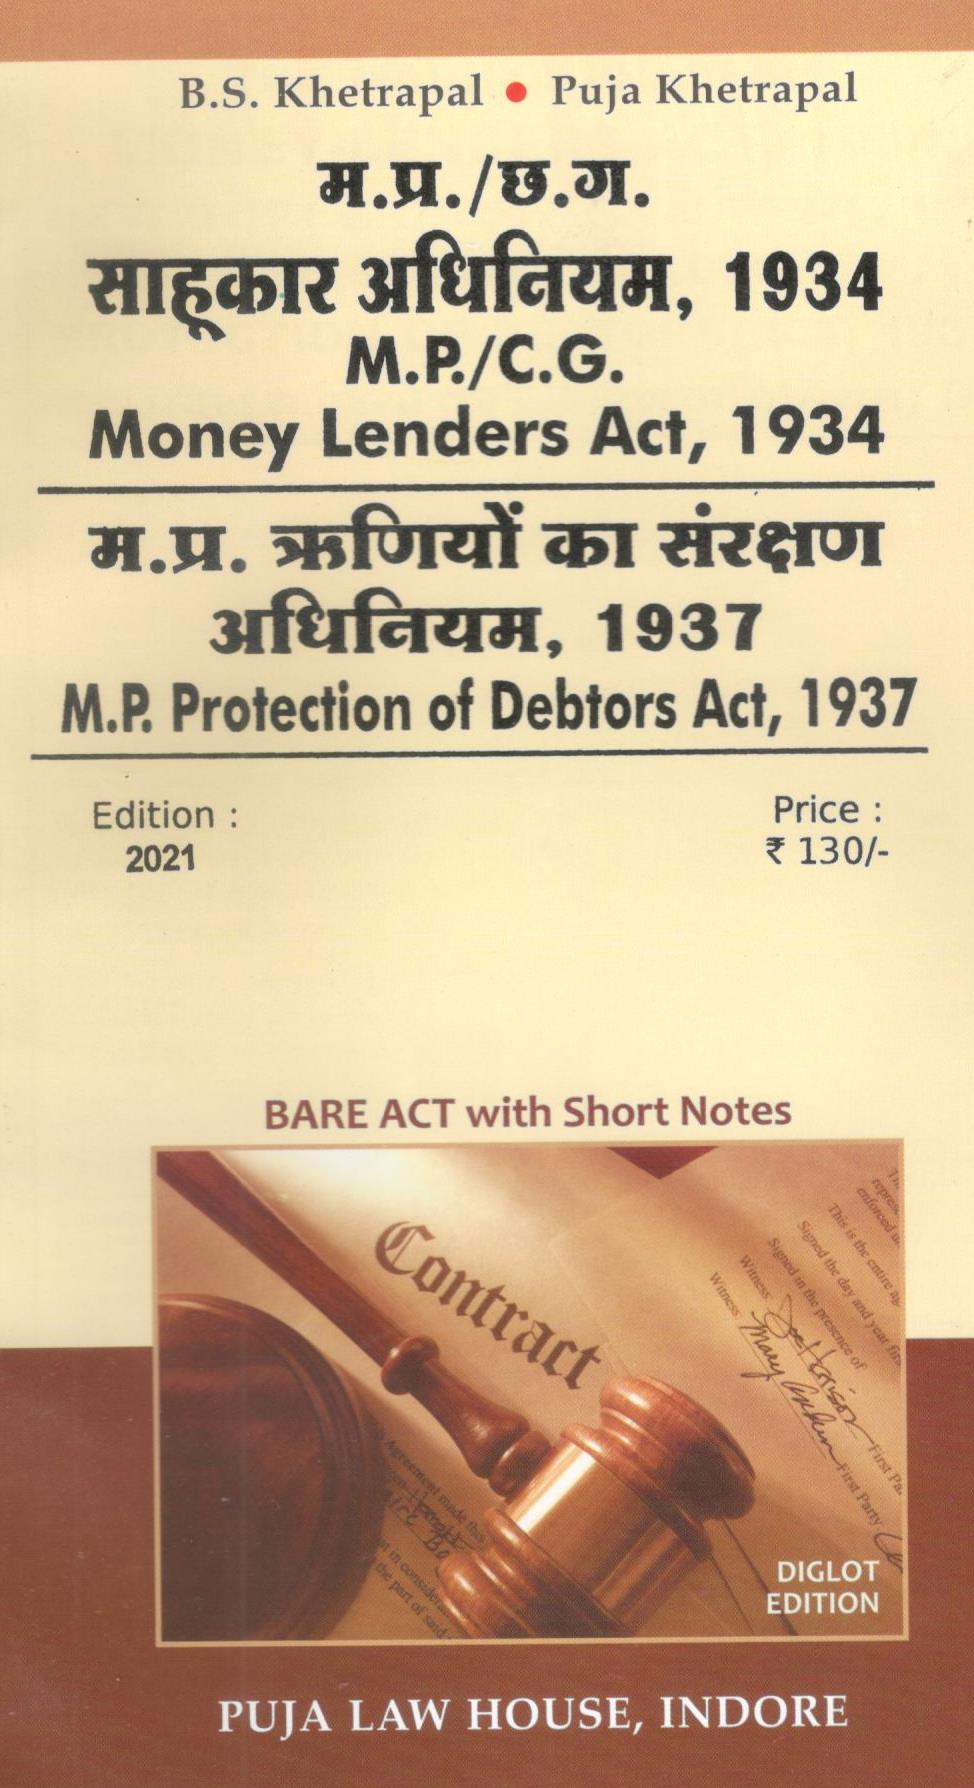 छ.ग. साहूकार अधिनियम,1934 एवं छ.ग. ऋणीयों का संरक्षण अधिनियम, 1937 / C.G. Money Lenders Act, 1934 & C.G. Protection of Debtors Act, 1937